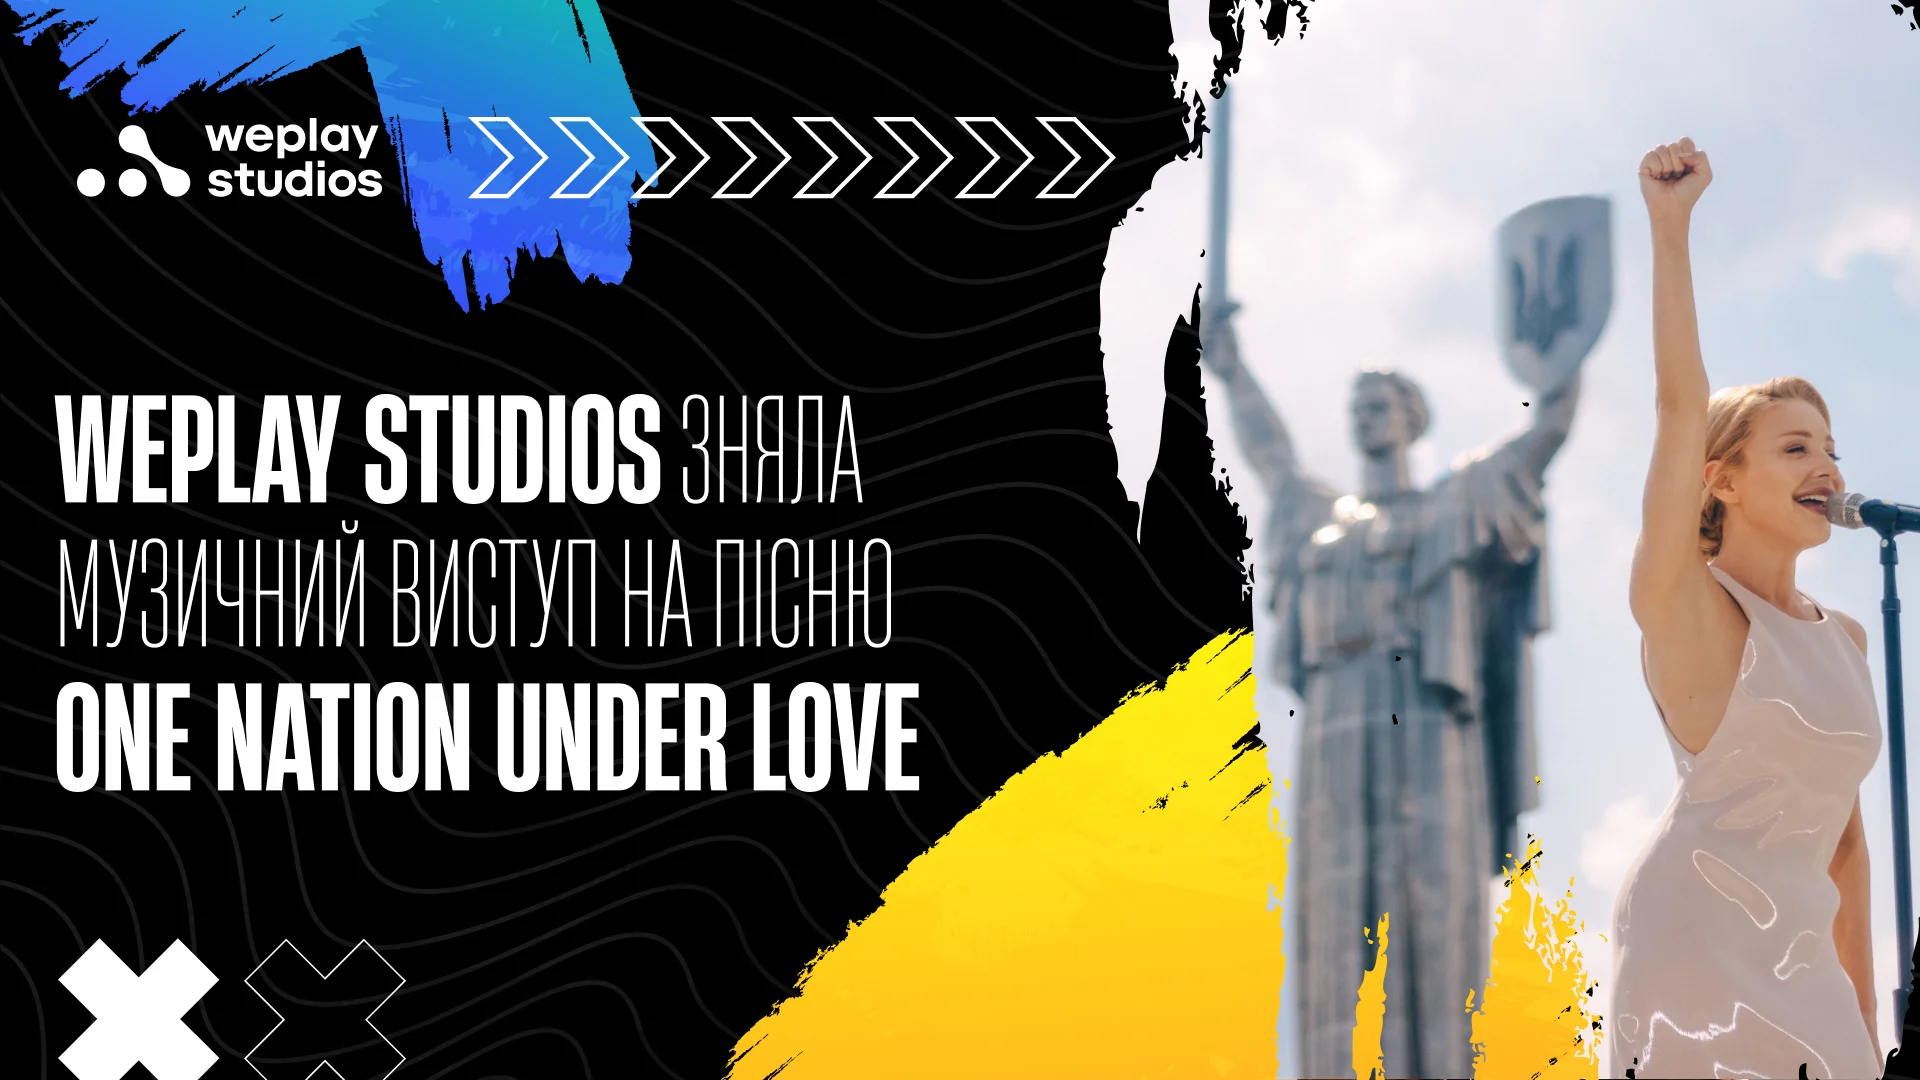 WePlay Studios зняла музичний виступ на спільну пісню Дайан Уоррен та Тіни Кароль, «One nation under love». Зображення: WePlay Holding